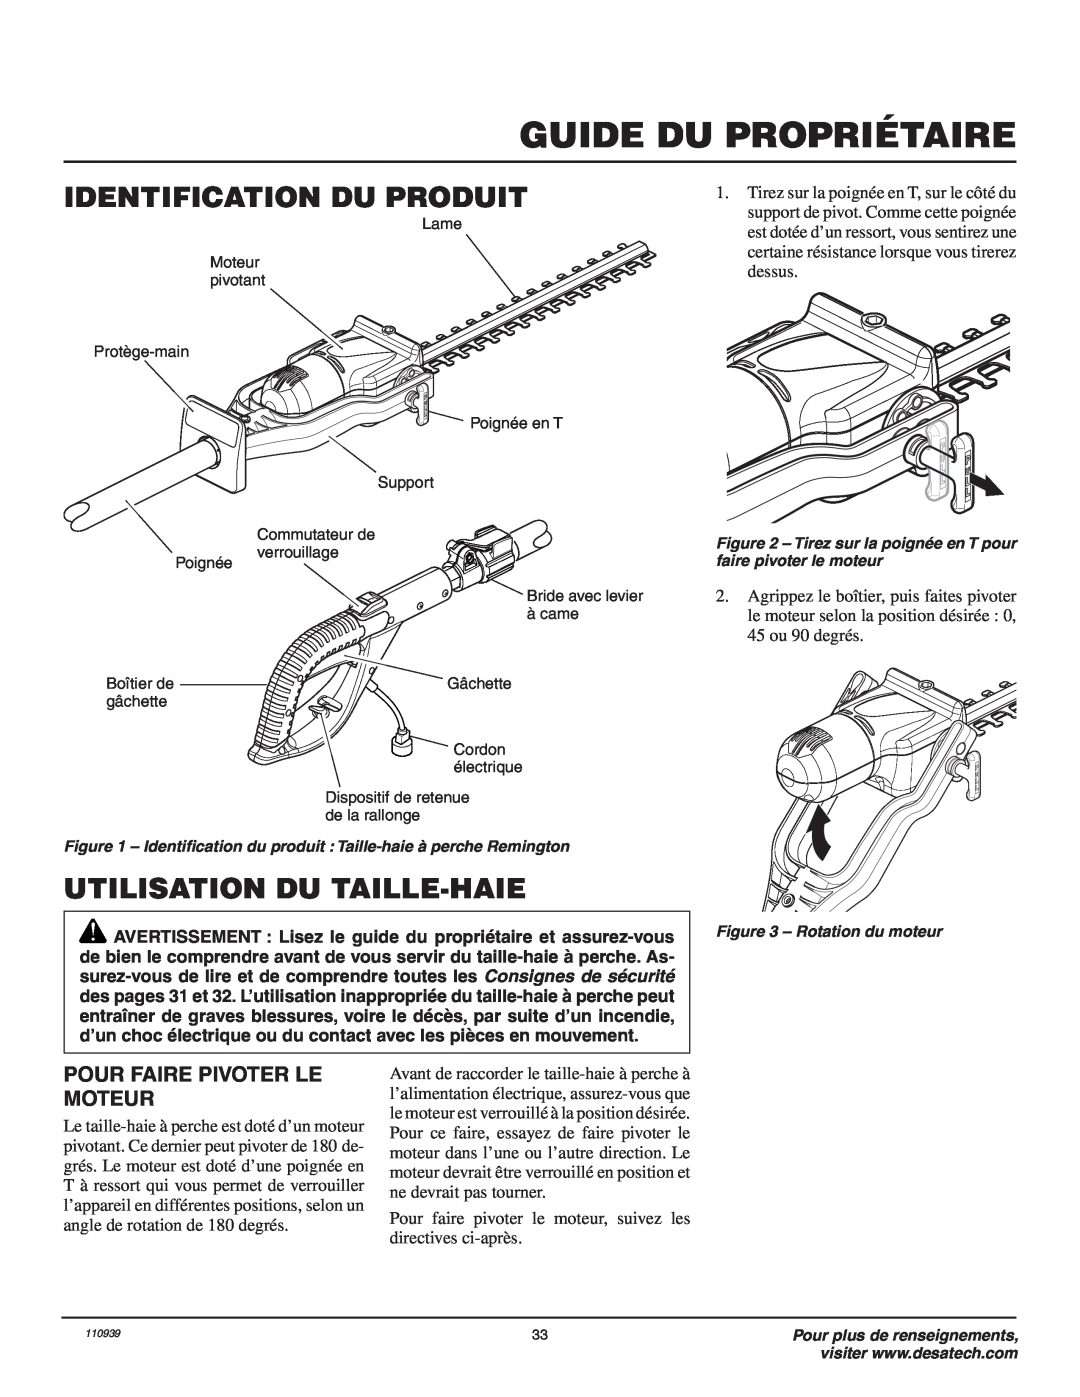 Remington Power Tools 117535-01A Identification Du Produit, Utilisation Du Taille-Haie, Pour Faire Pivoter Le Moteur 